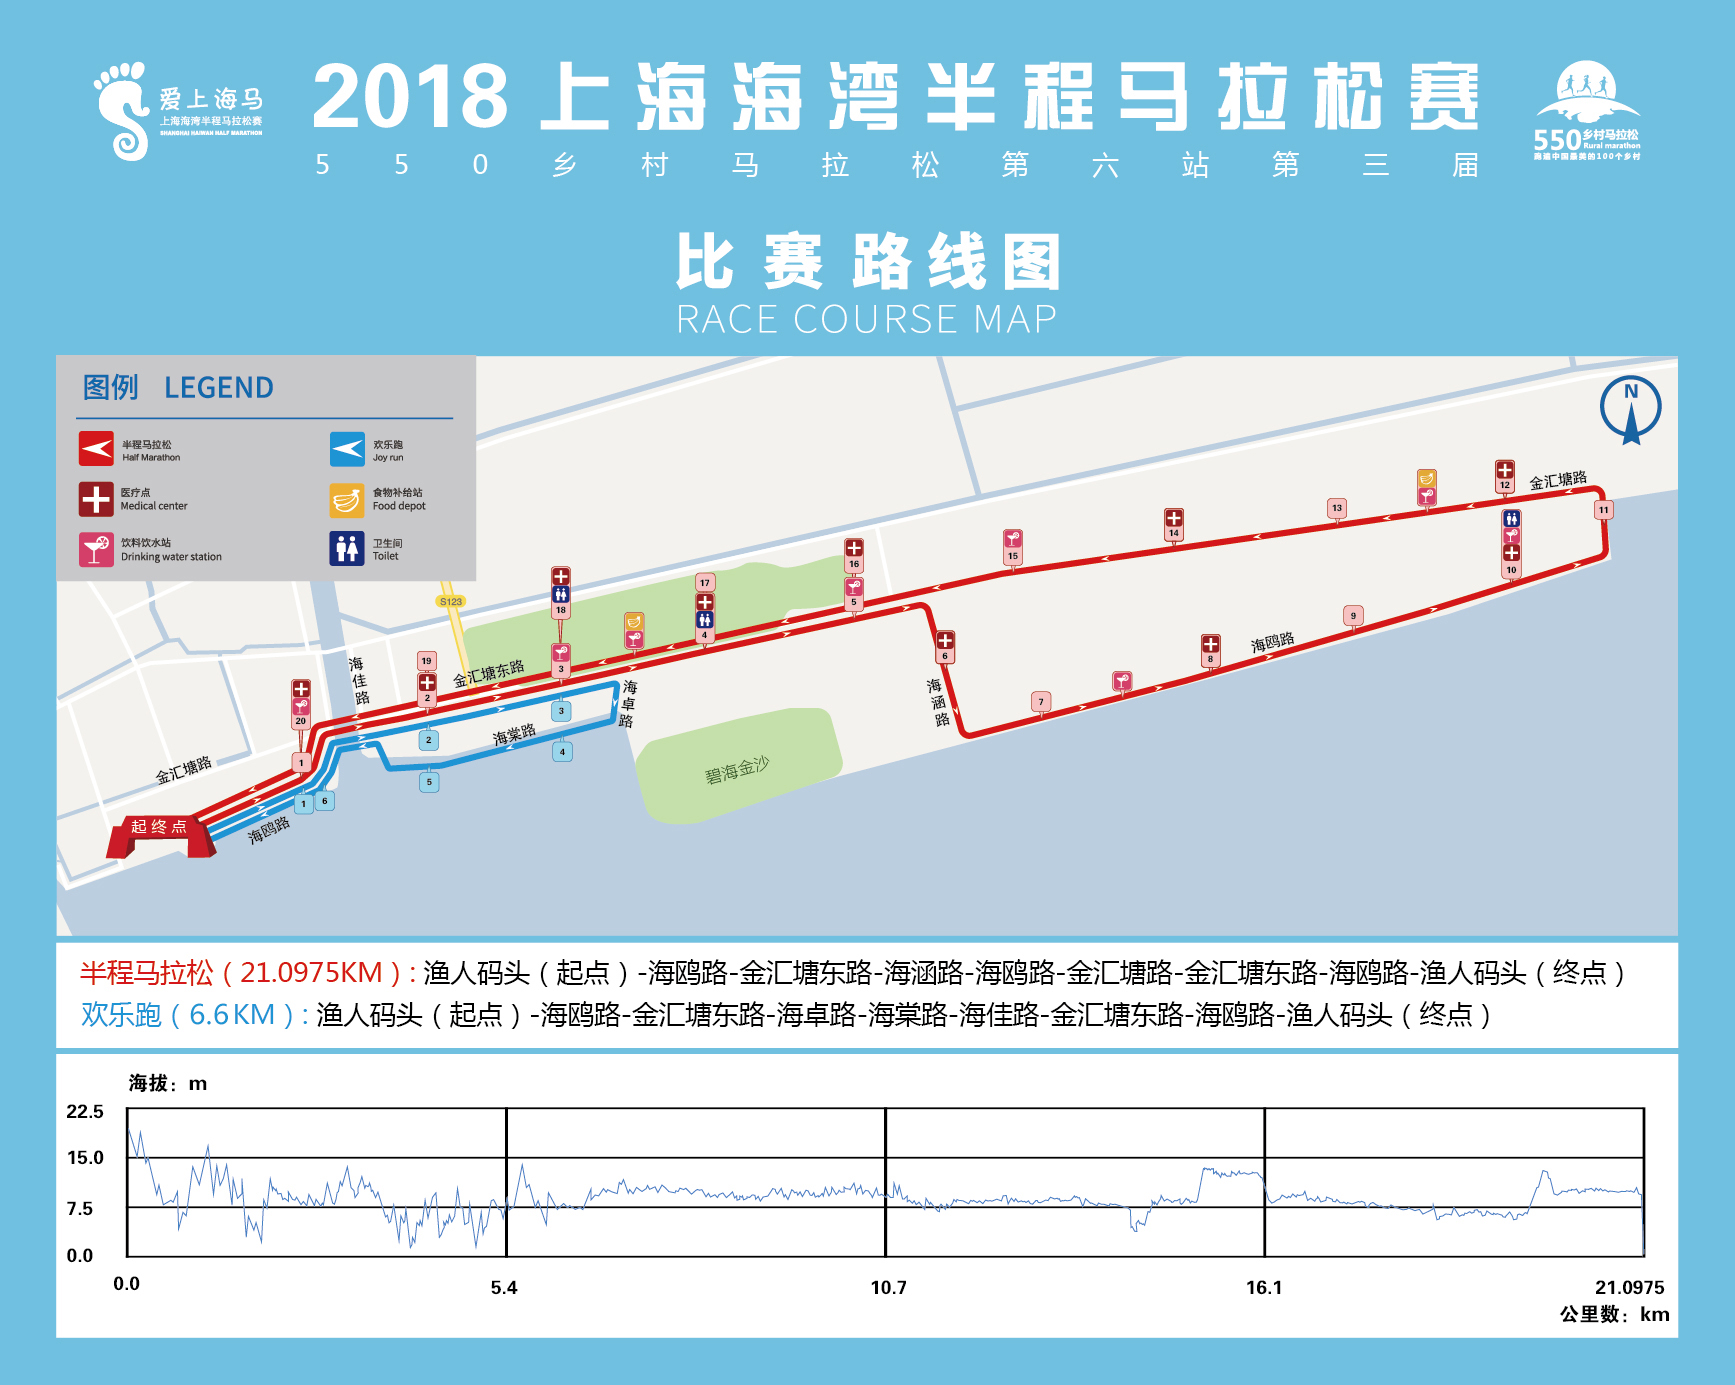 上海海湾半程马拉松赛